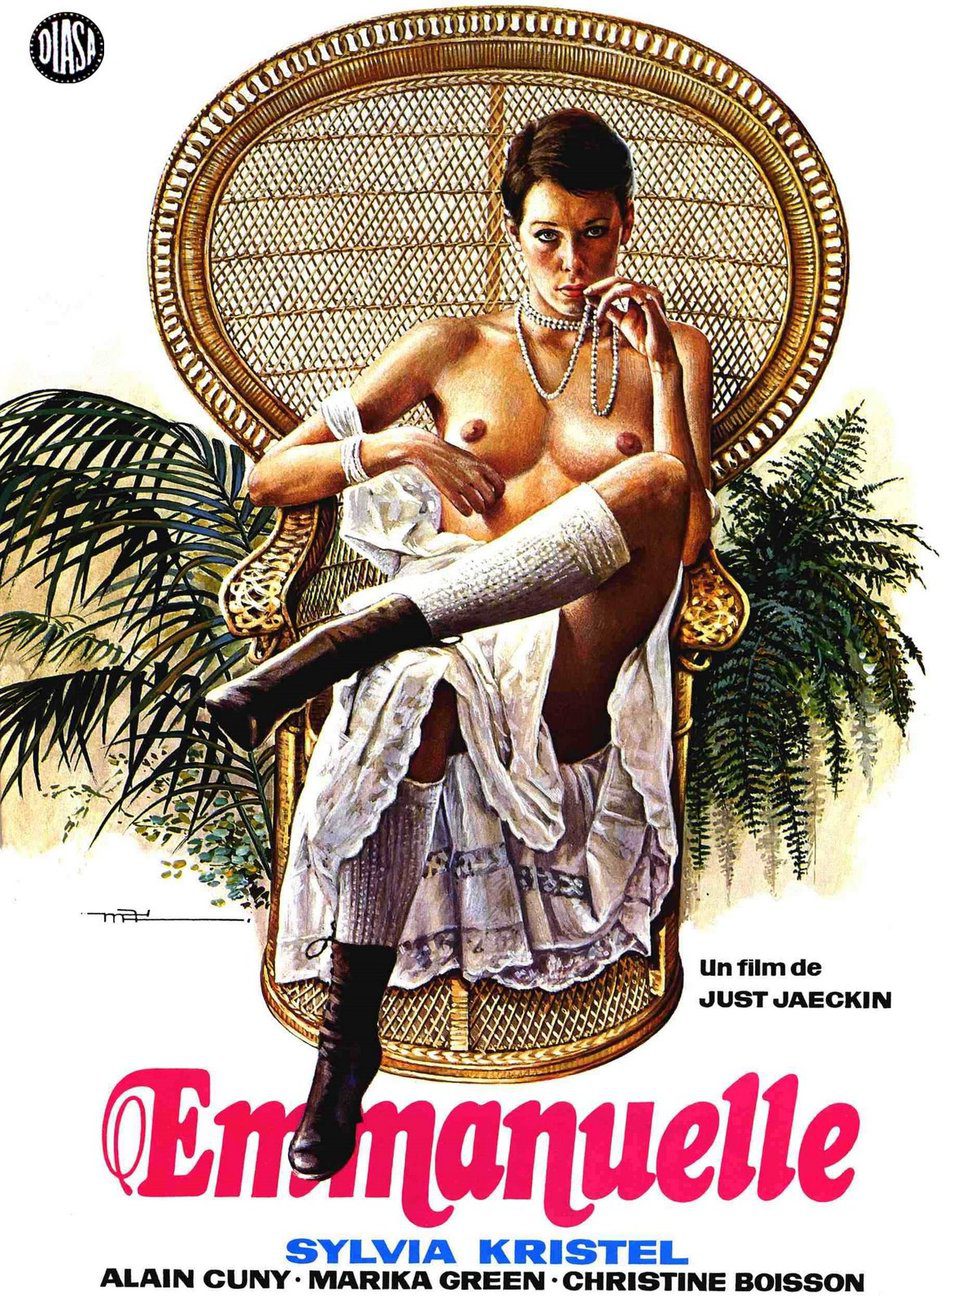 Poster of Emmanuelle - Francia